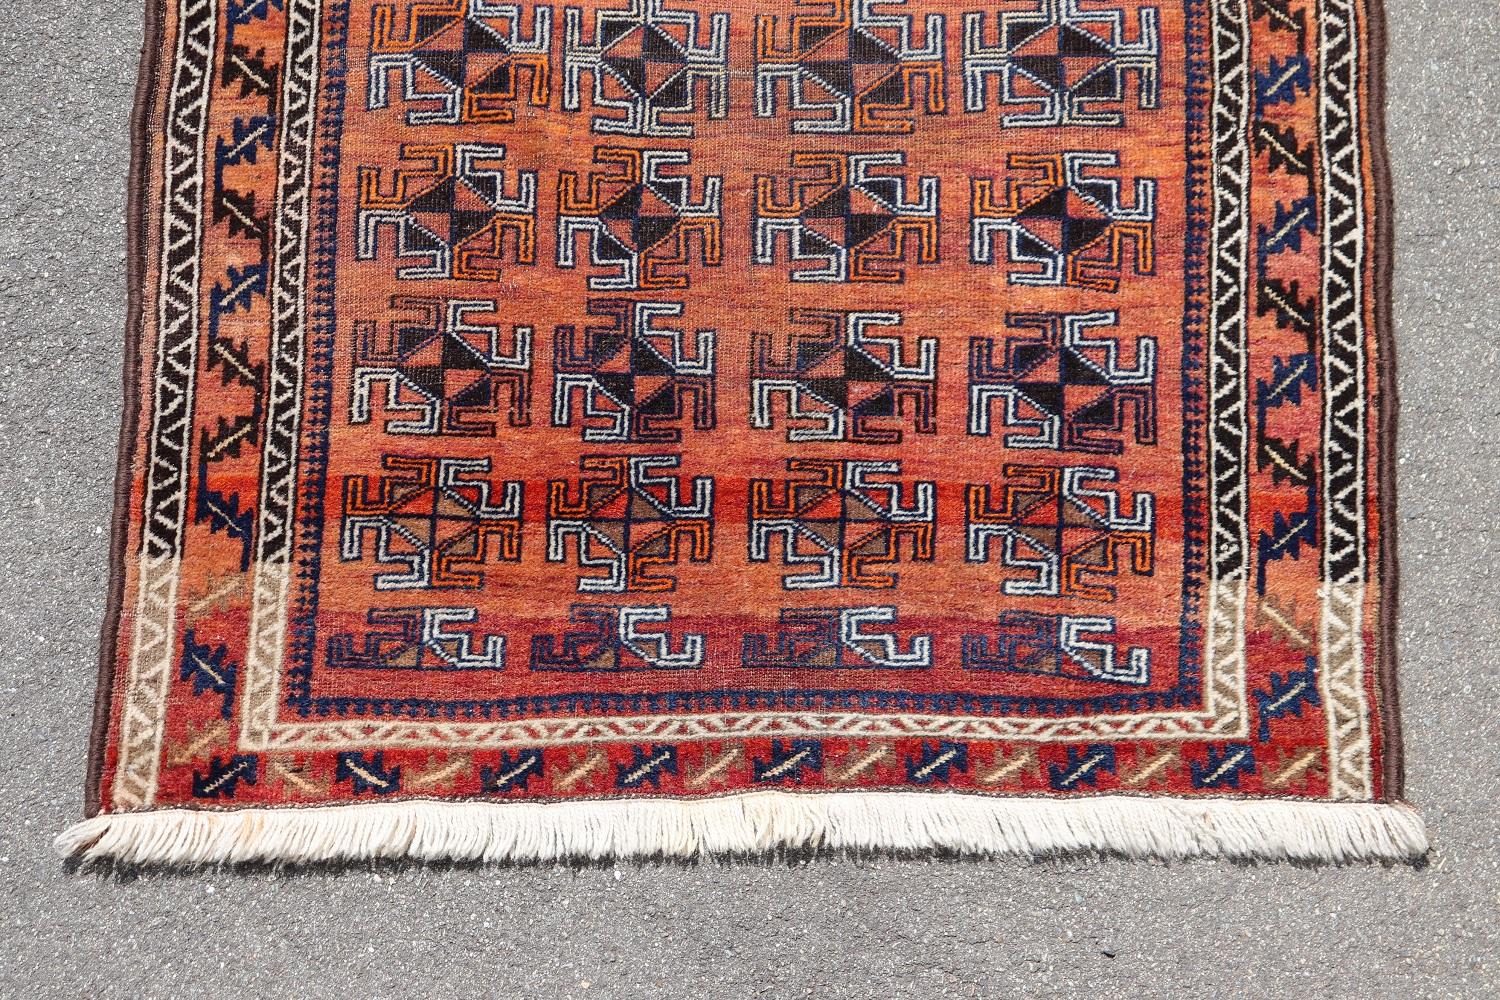 Belle fabrication ancienne ( 1930s circa)  Tapis afghan Baluch au design tribal inhabituel avec une combinaison de couleurs : rouge, blanc, noir. Ce fantastique tapis est fait à la main en laine. Conditions d'utilisation.
   